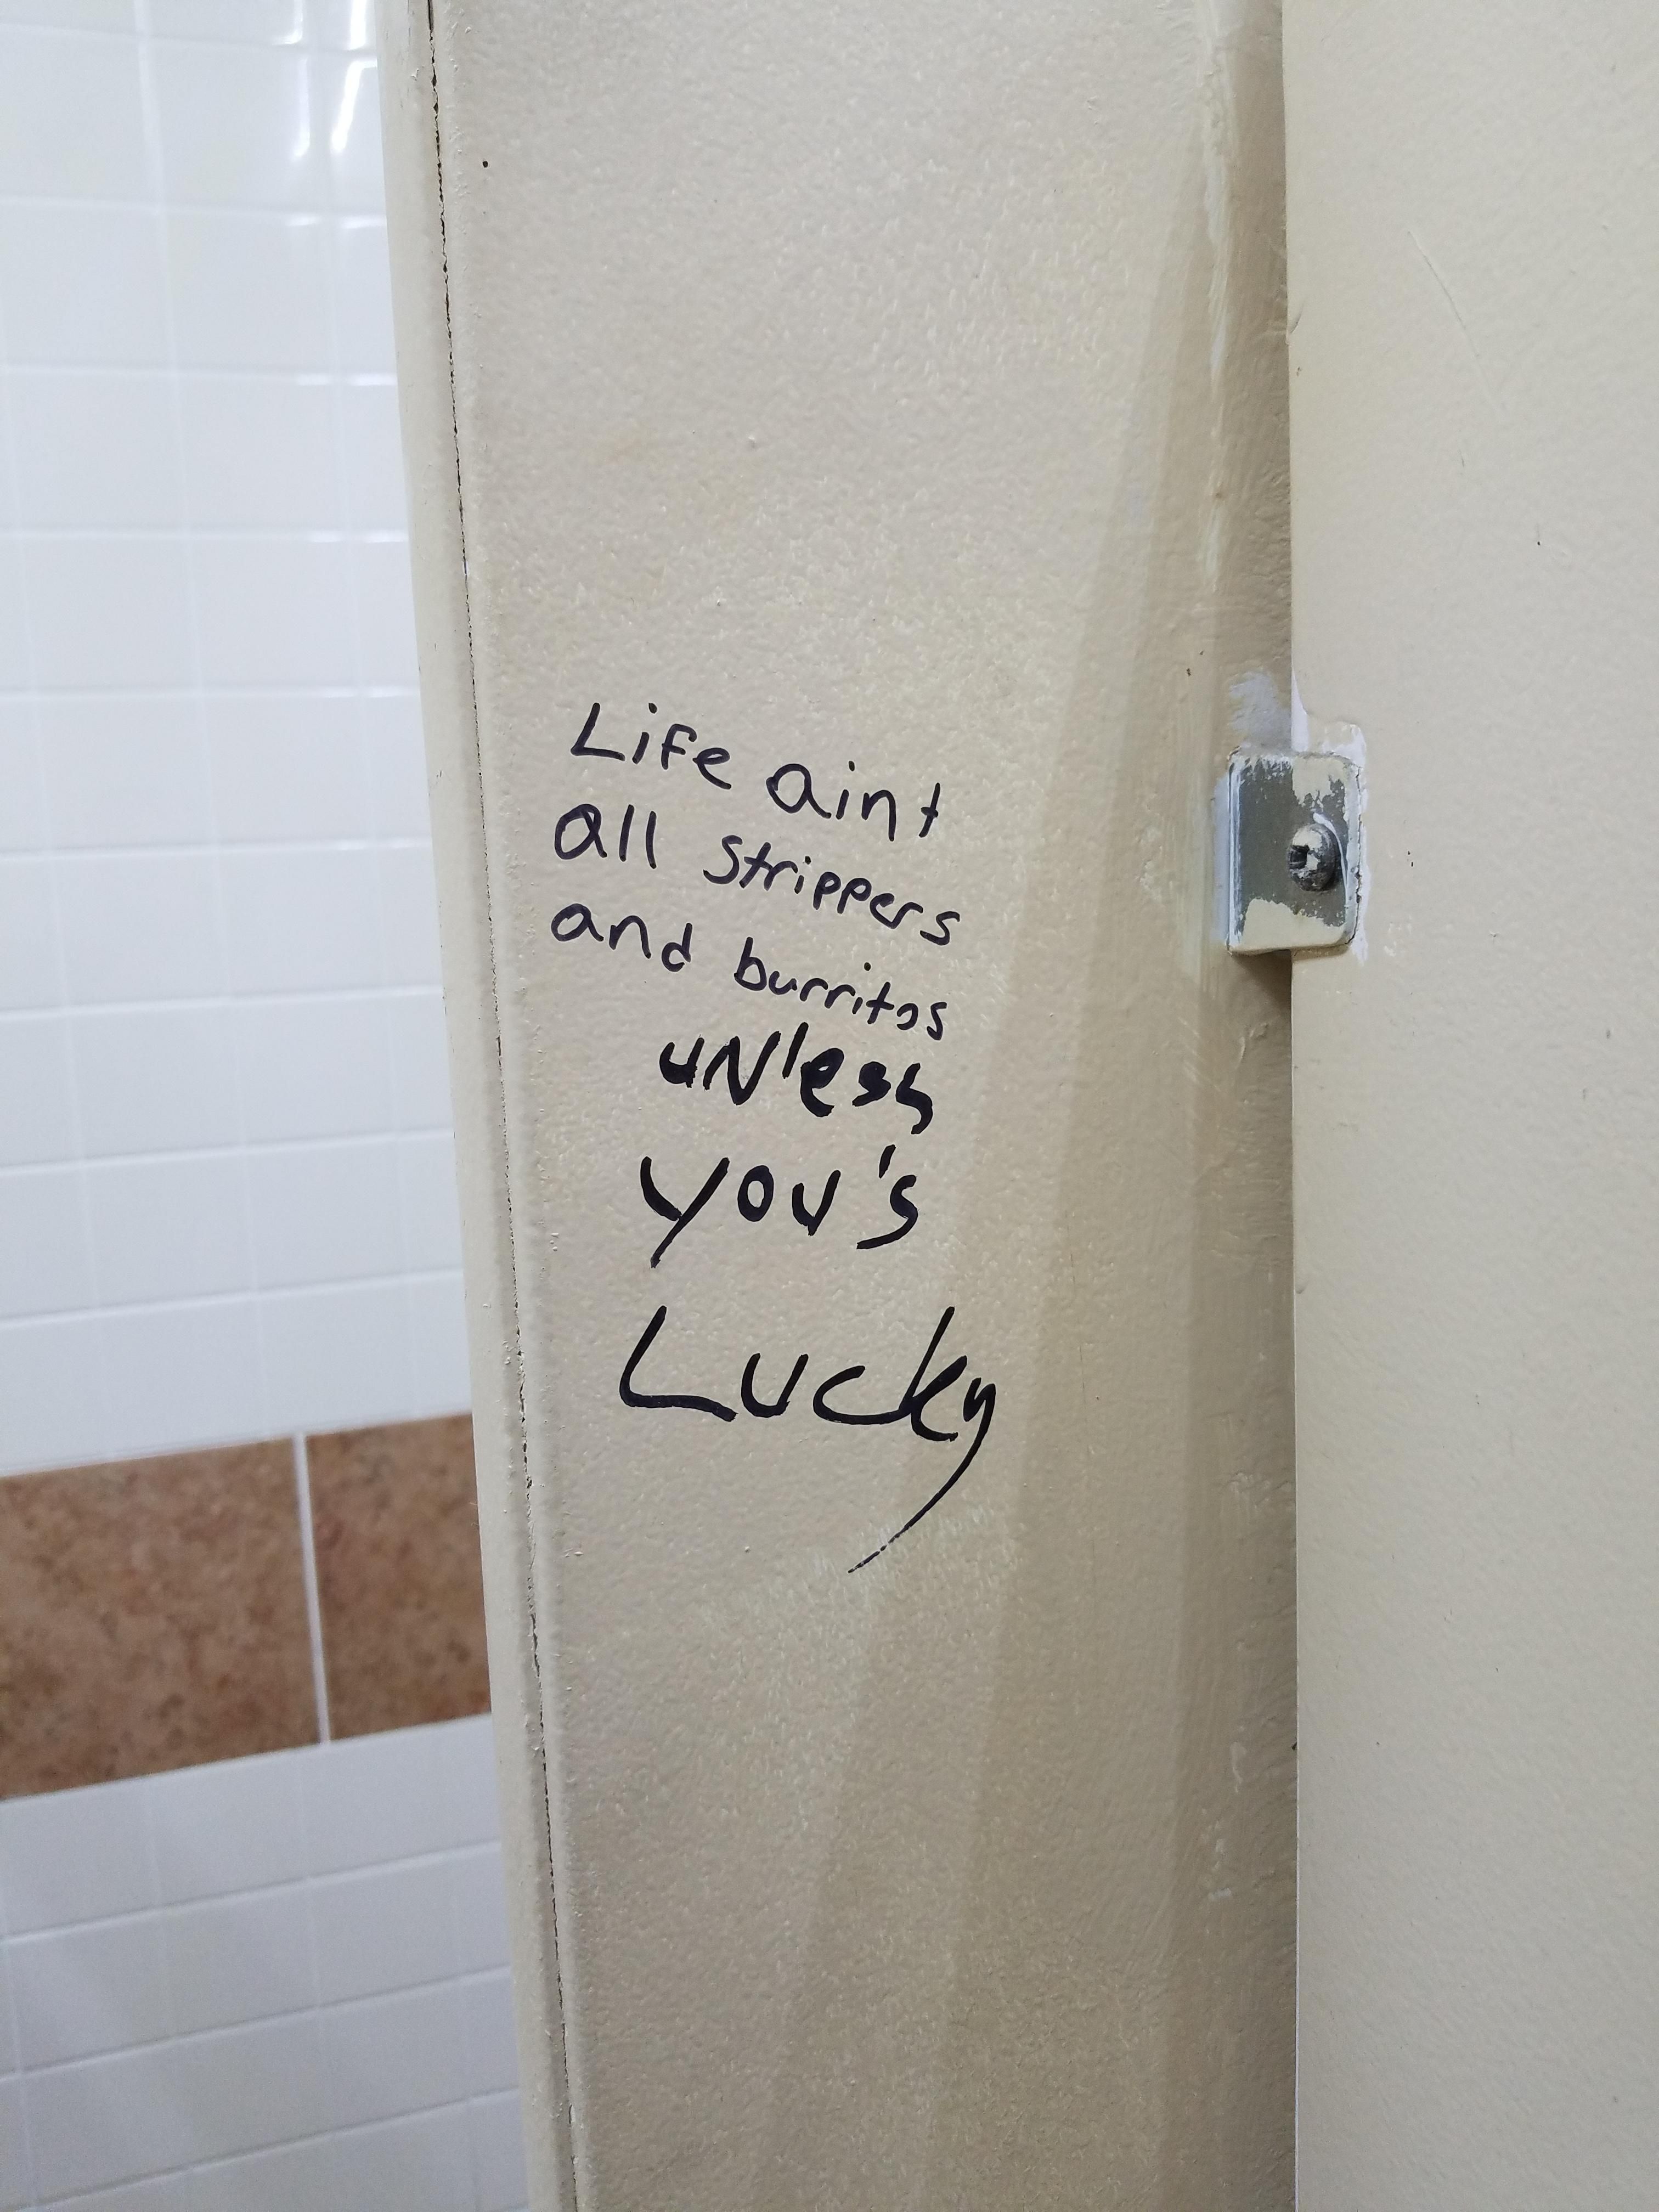 Some bathroom wisdom